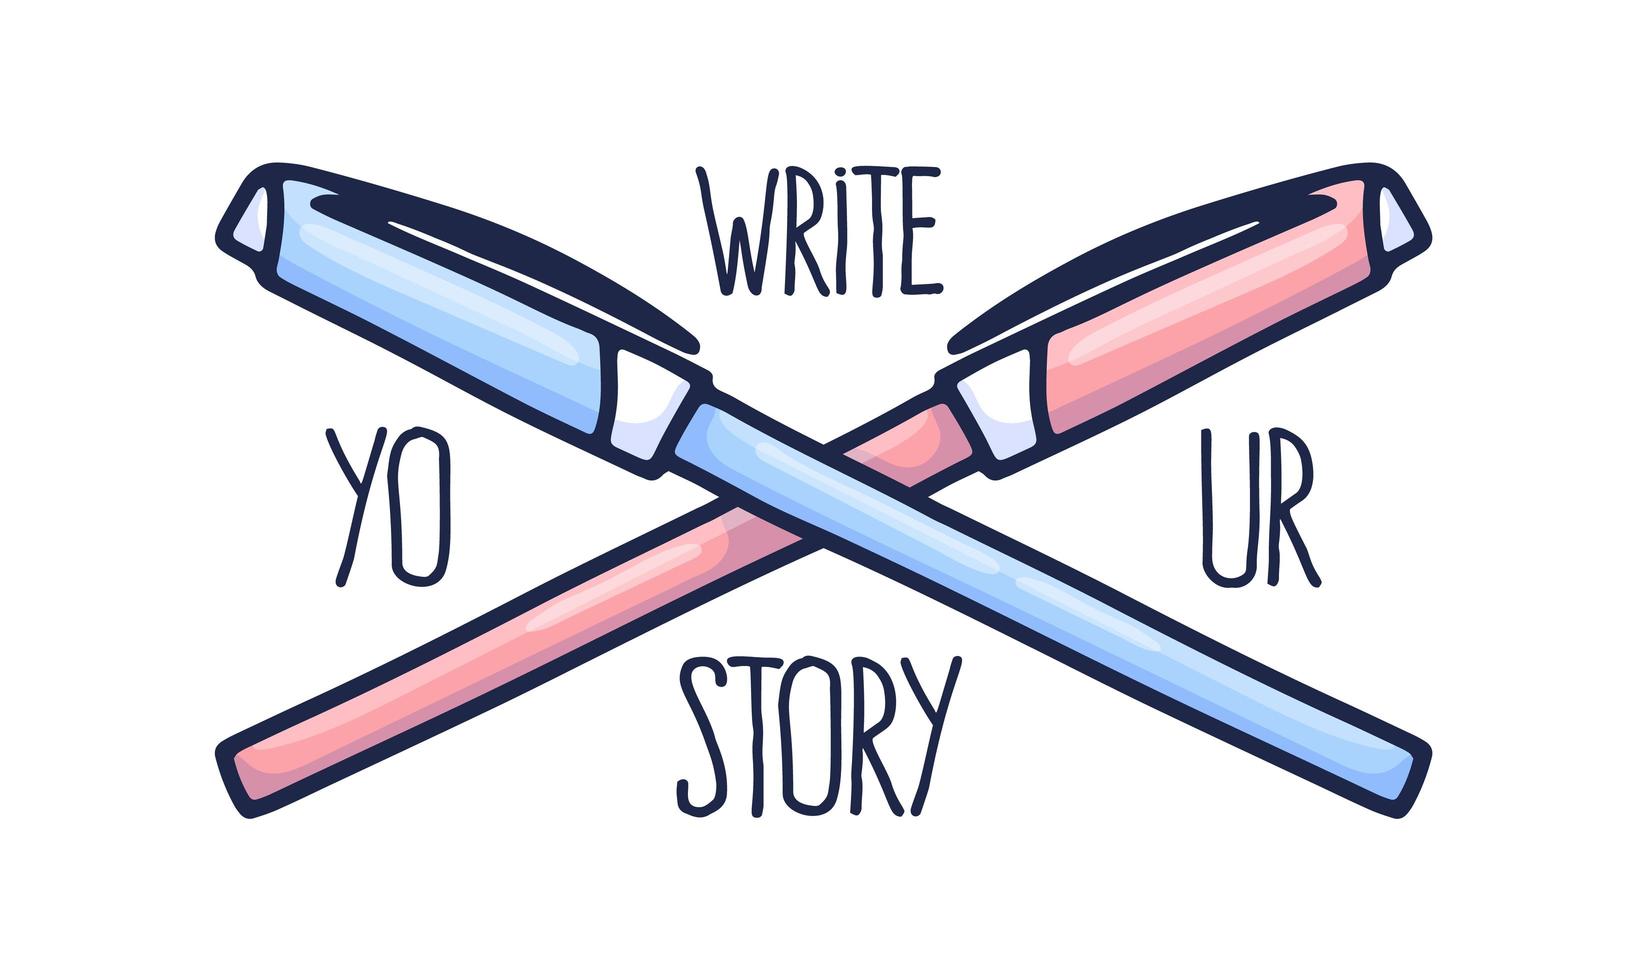 schrijf je verhaalslogan. belettering en met de hand getekende twee pennen van roze en blauw, die zijn gemaakt in doodle-stijl vector